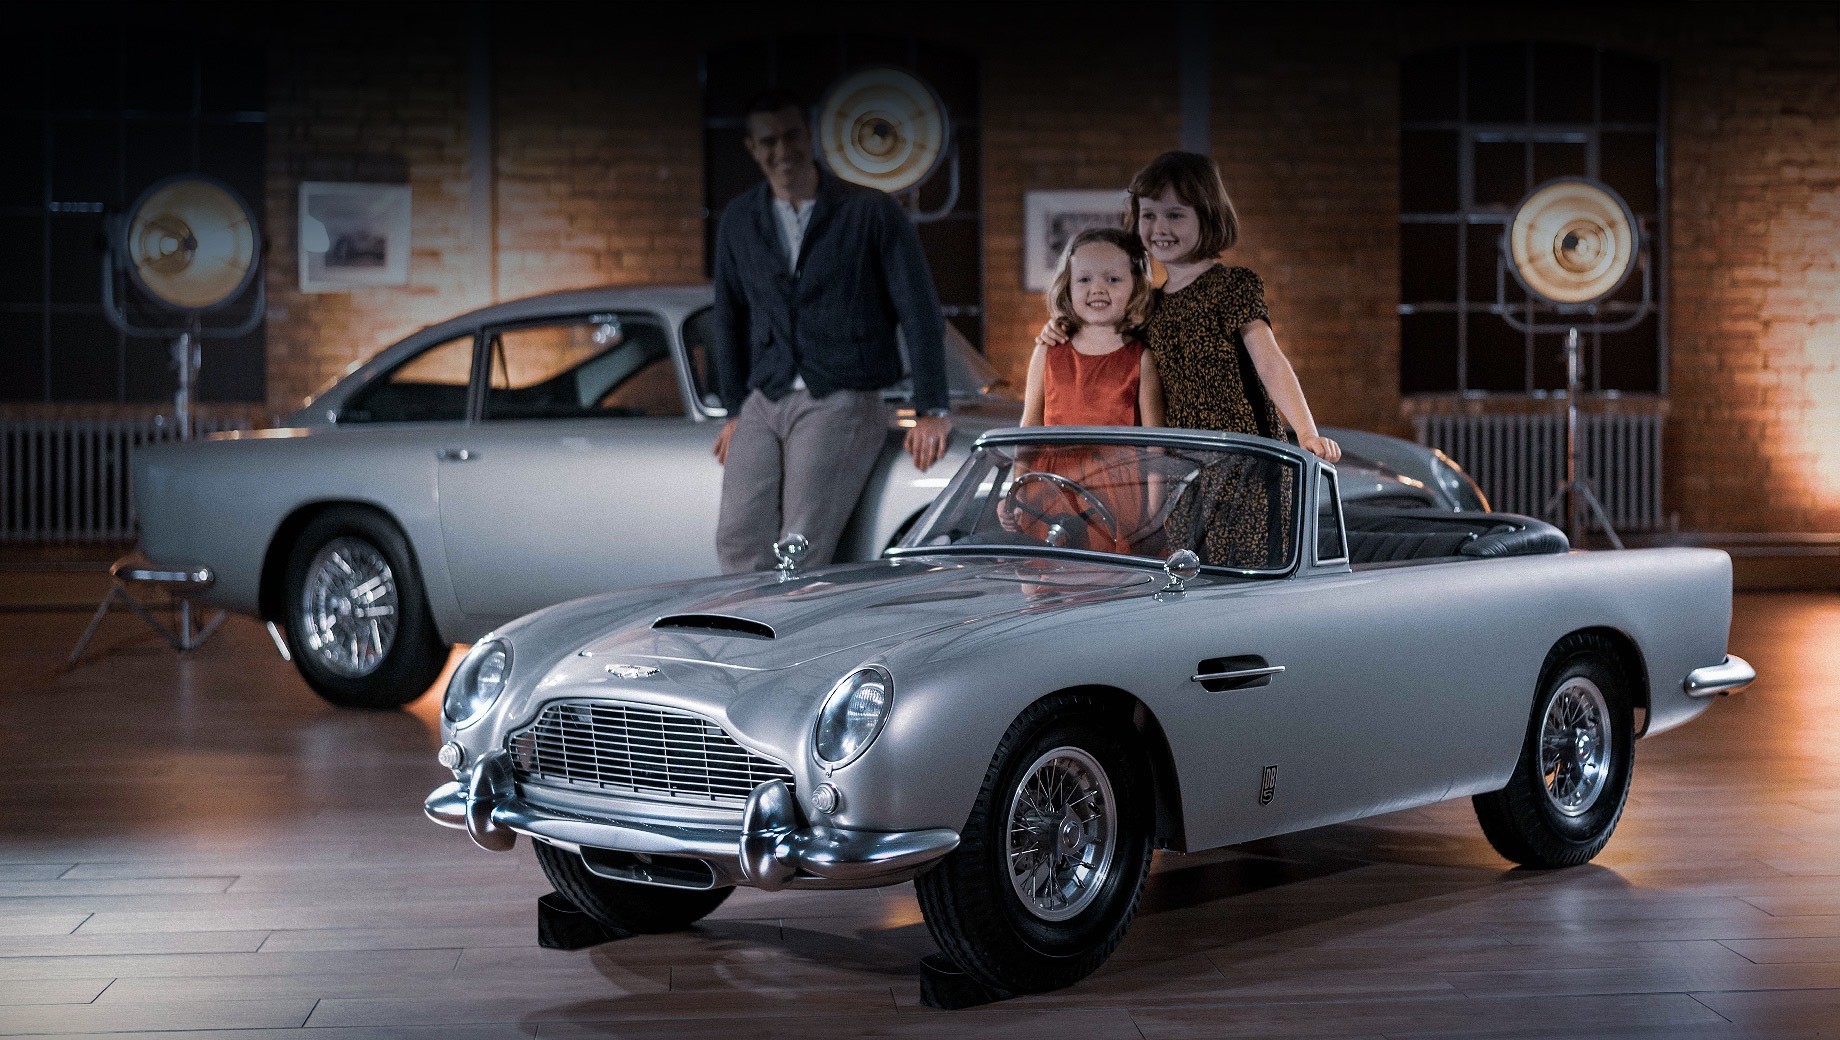 Aston martin db5,Aston martin db5 junior. Британцы уже принимают заказы на электрокар Aston Martin DB5 Junior. Начальный вариант оценивается в 35 000 фунтов (3,5 млн рублей), а более мощный Vantage — в 45 000 (4,5 млн). Всего сделают 1059 машин. Столько же было выпущено оригинальных купе с 1963 по 1965 год.